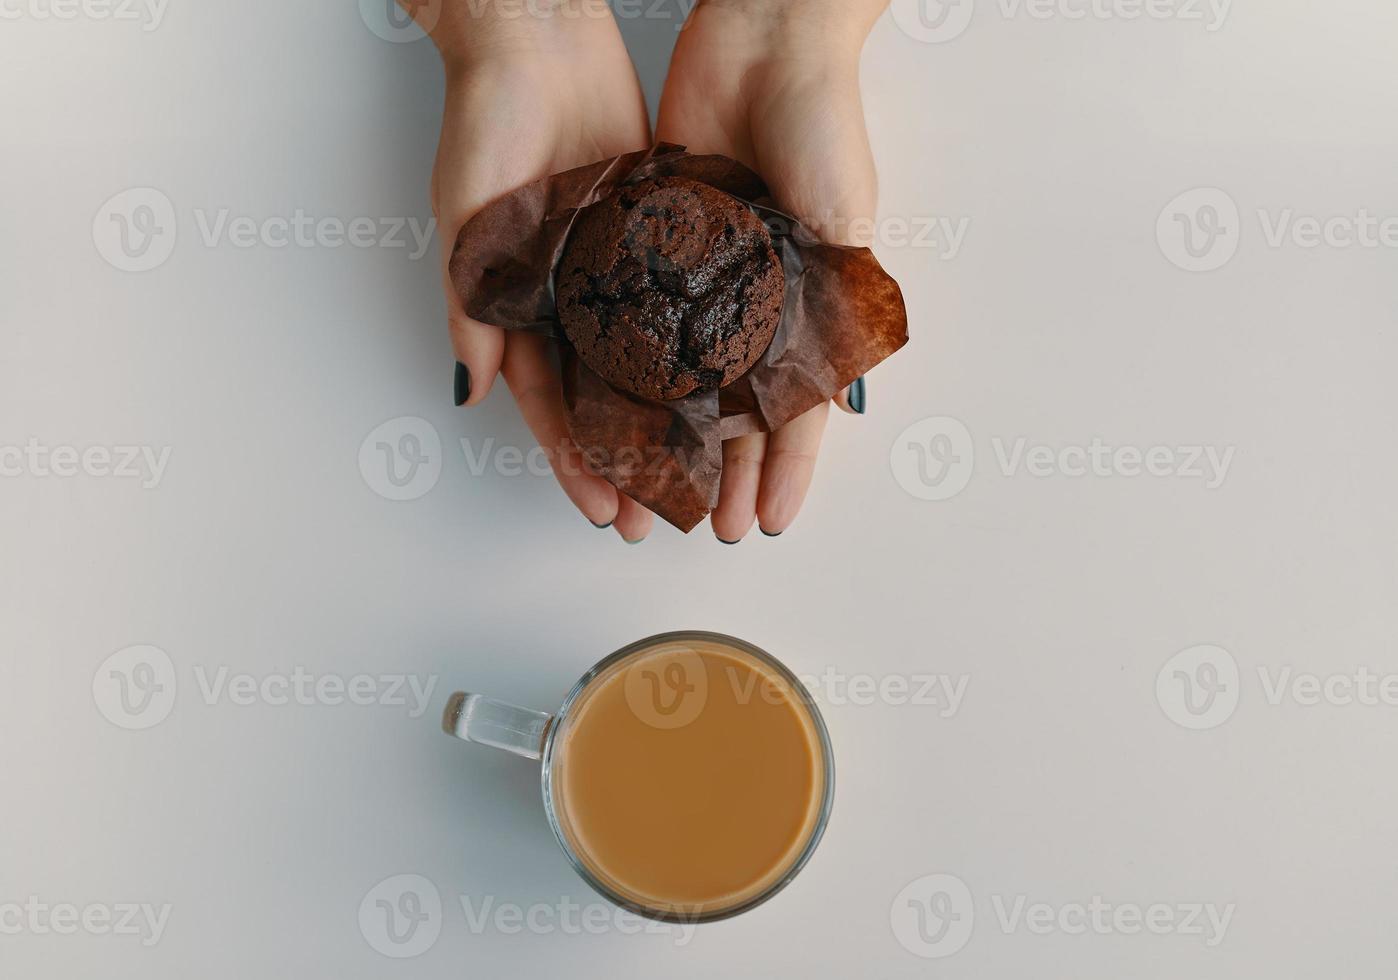 muffin al cioccolato nelle mani della donna e tazza di caffè caldo accanto ad essa foto